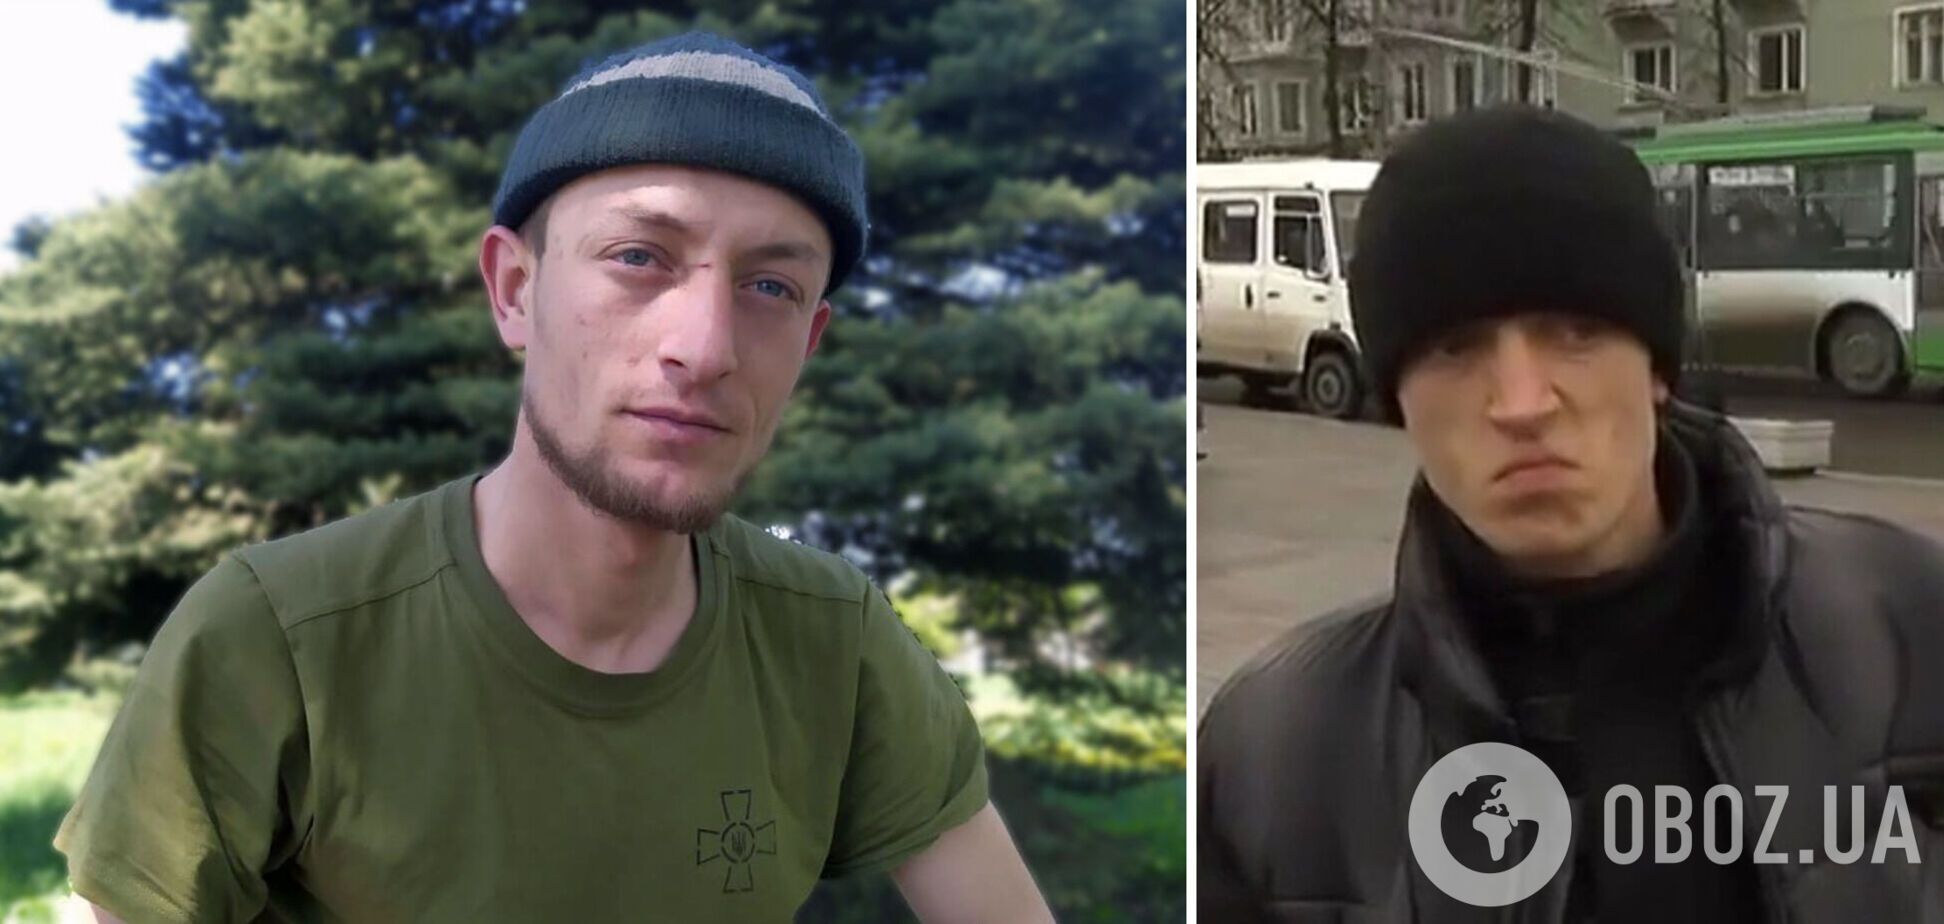 Герой мемів 'Чоткий паца' воює проти окупантів на Донбасі: у мережі розповіли його історію. Фото